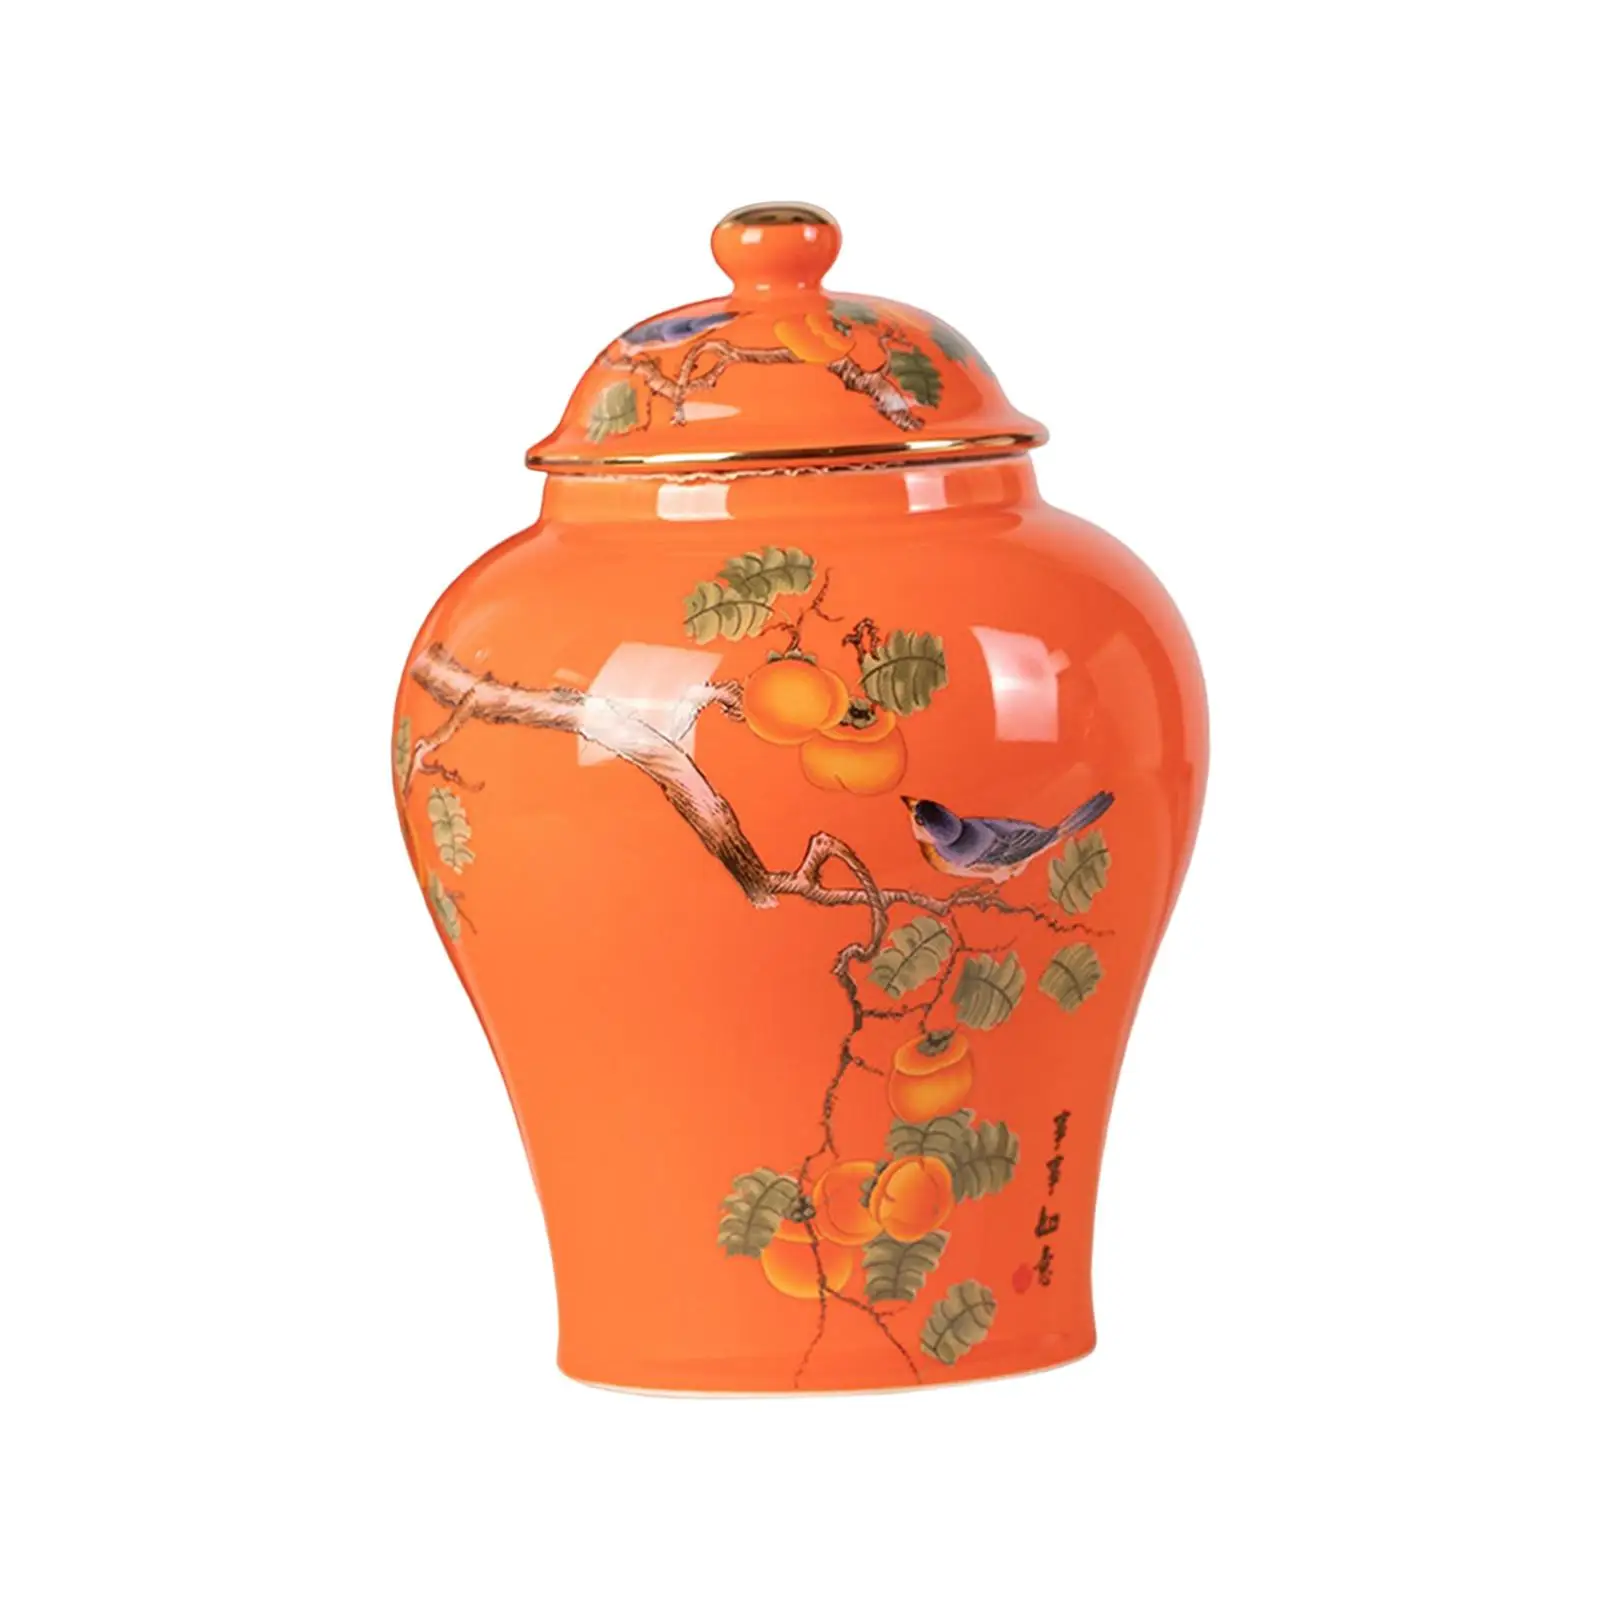 Ceramic Ginger Jars Porcelain Storage Jar Tea Canister Centerpiece Table Flower Vase for Home Office Shelf Decor Collection